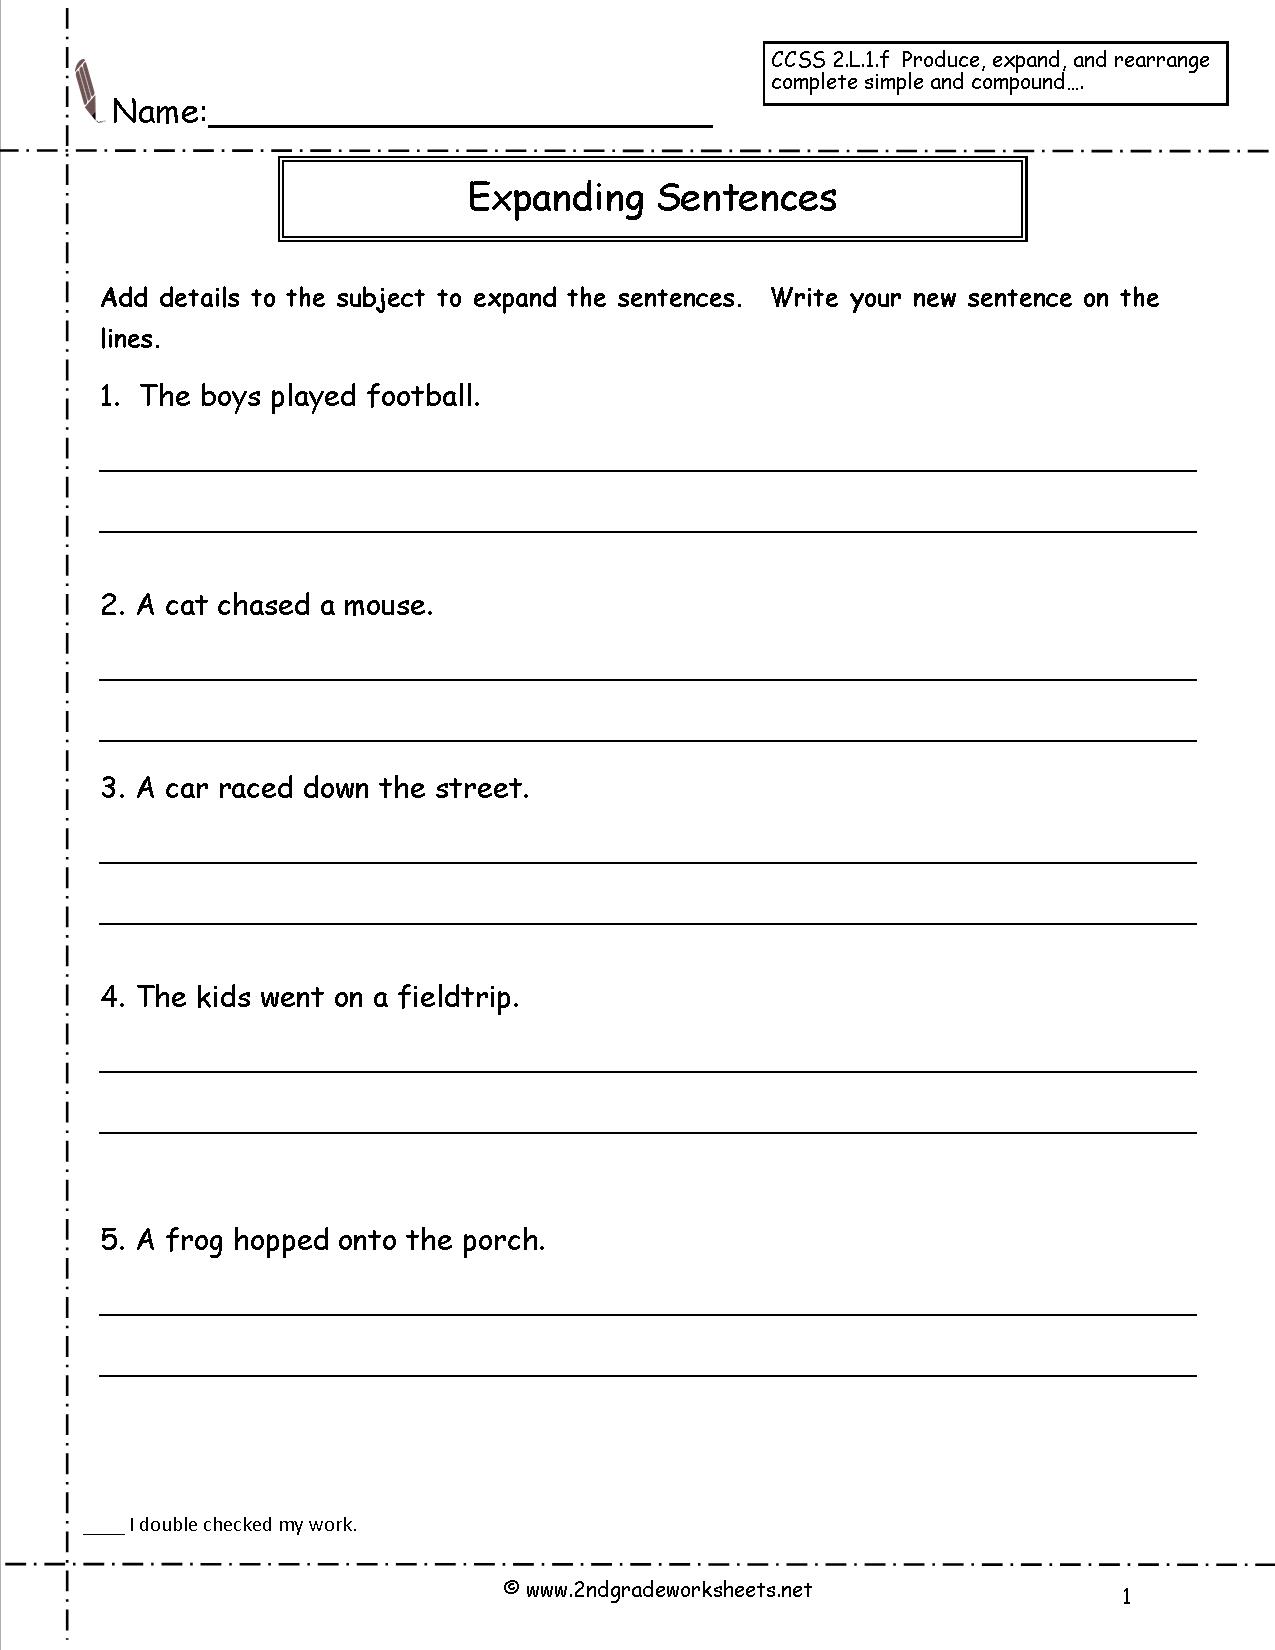 Copying Sentences Worksheets For 3rd Grade